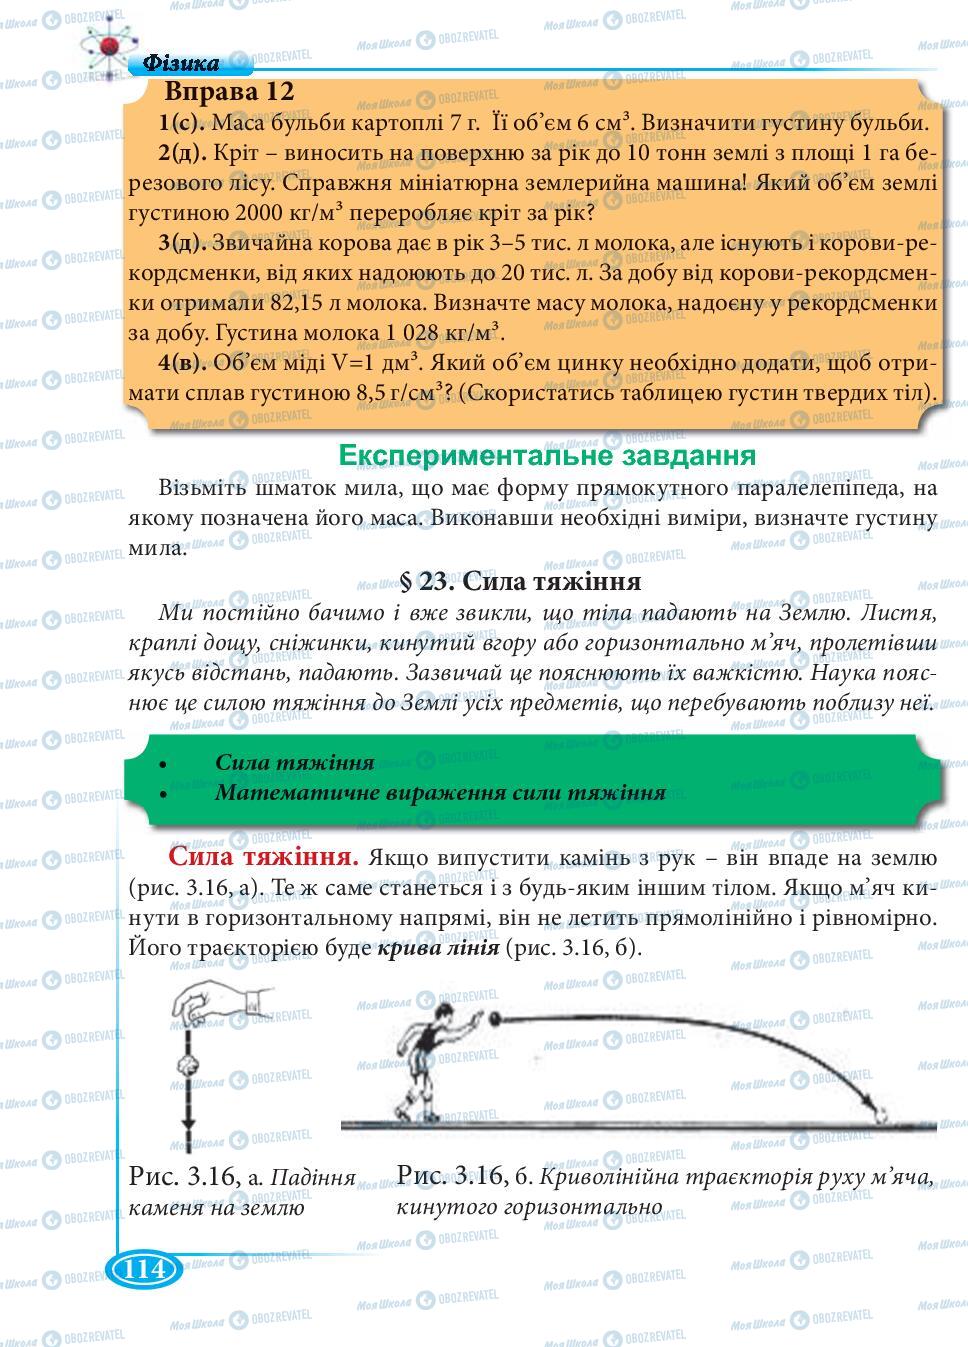 Учебники Физика 7 класс страница 114